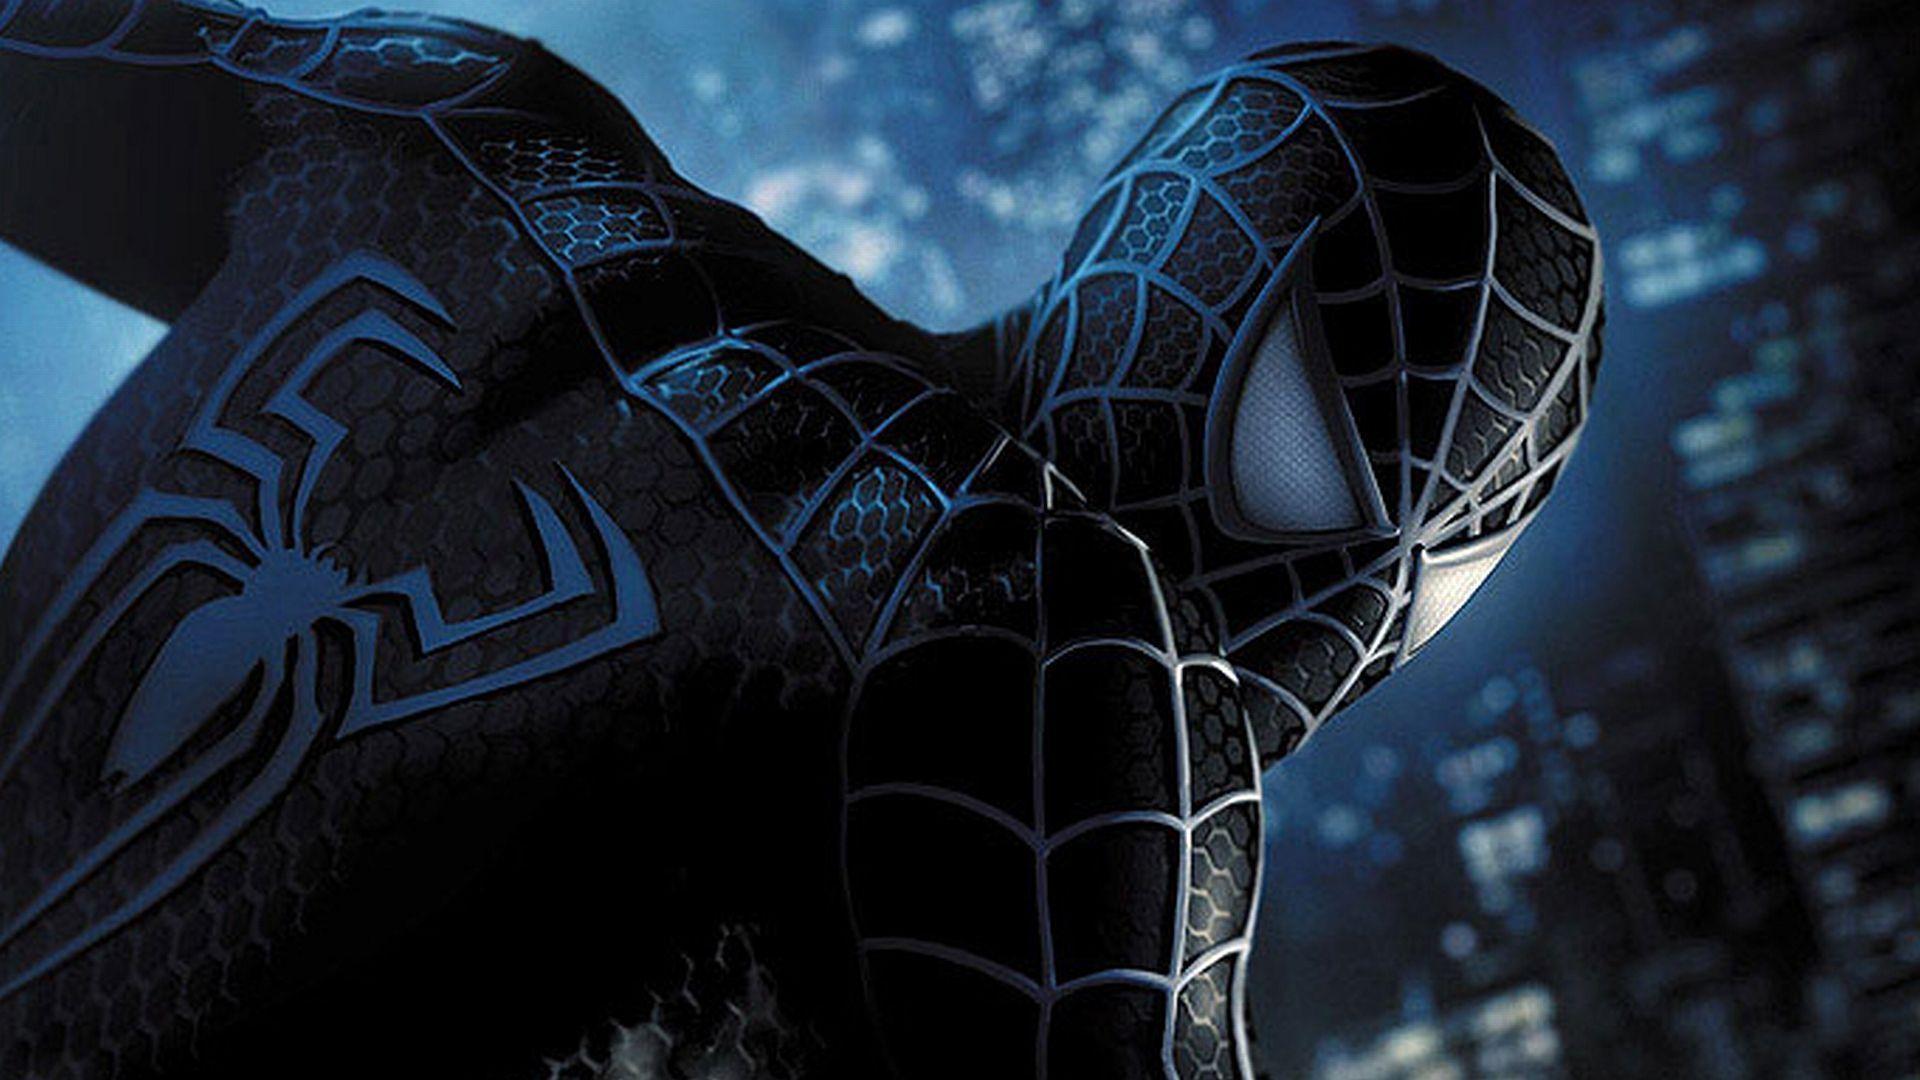 Spider Man Kulit Hitam Ini Siap Debut Film Di 2018 Kaskus